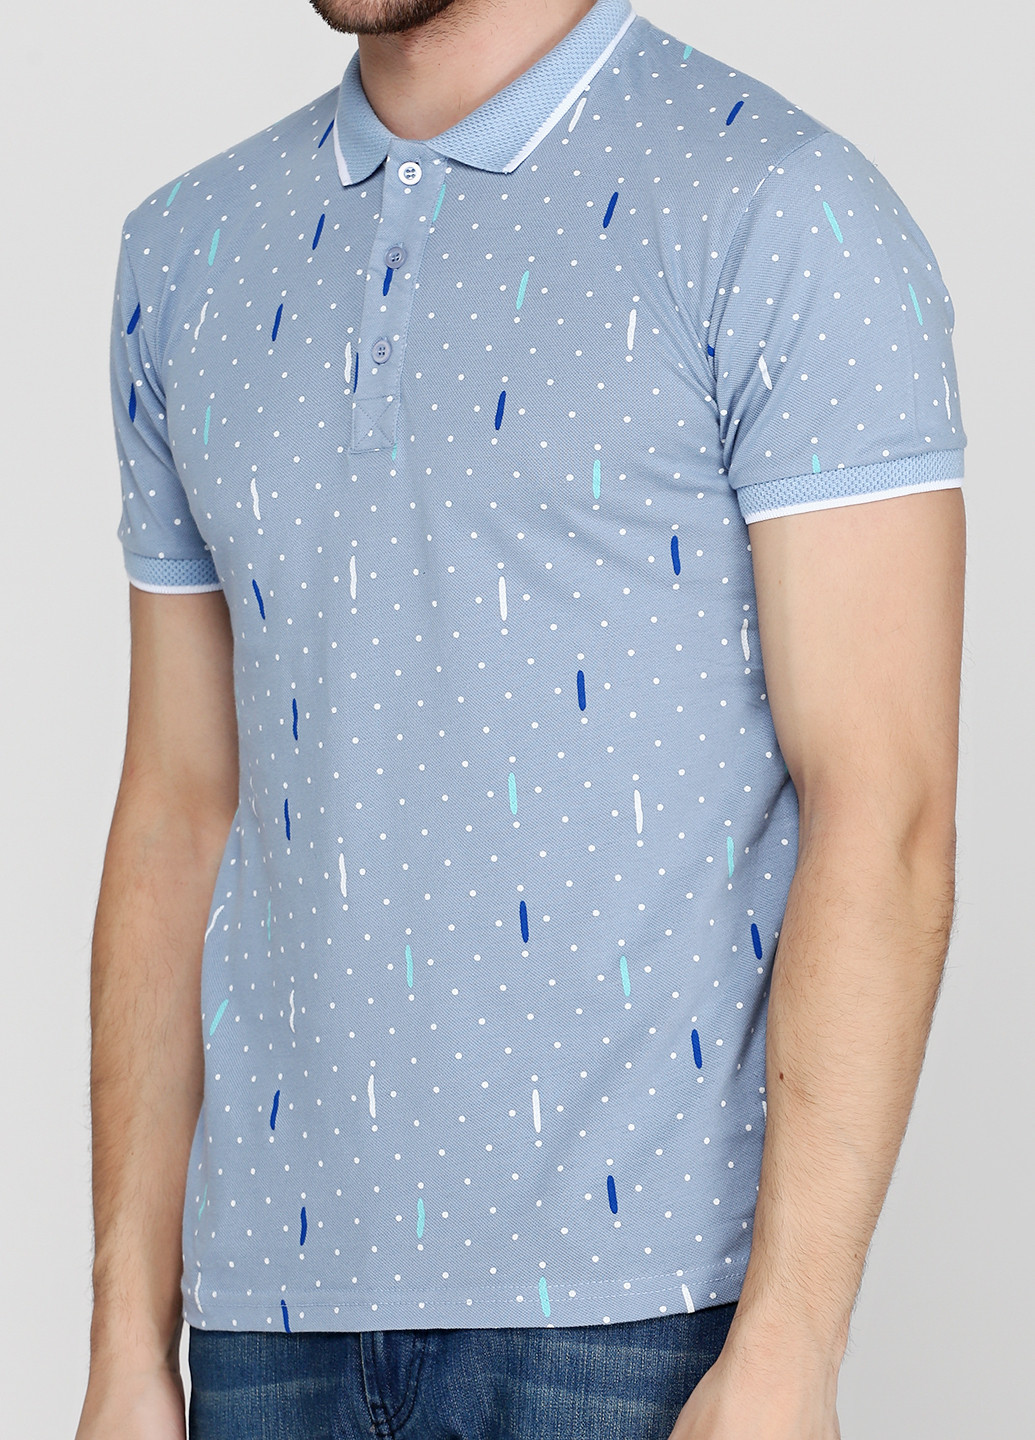 Голубой футболка-поло для мужчин Barazza с абстрактным узором